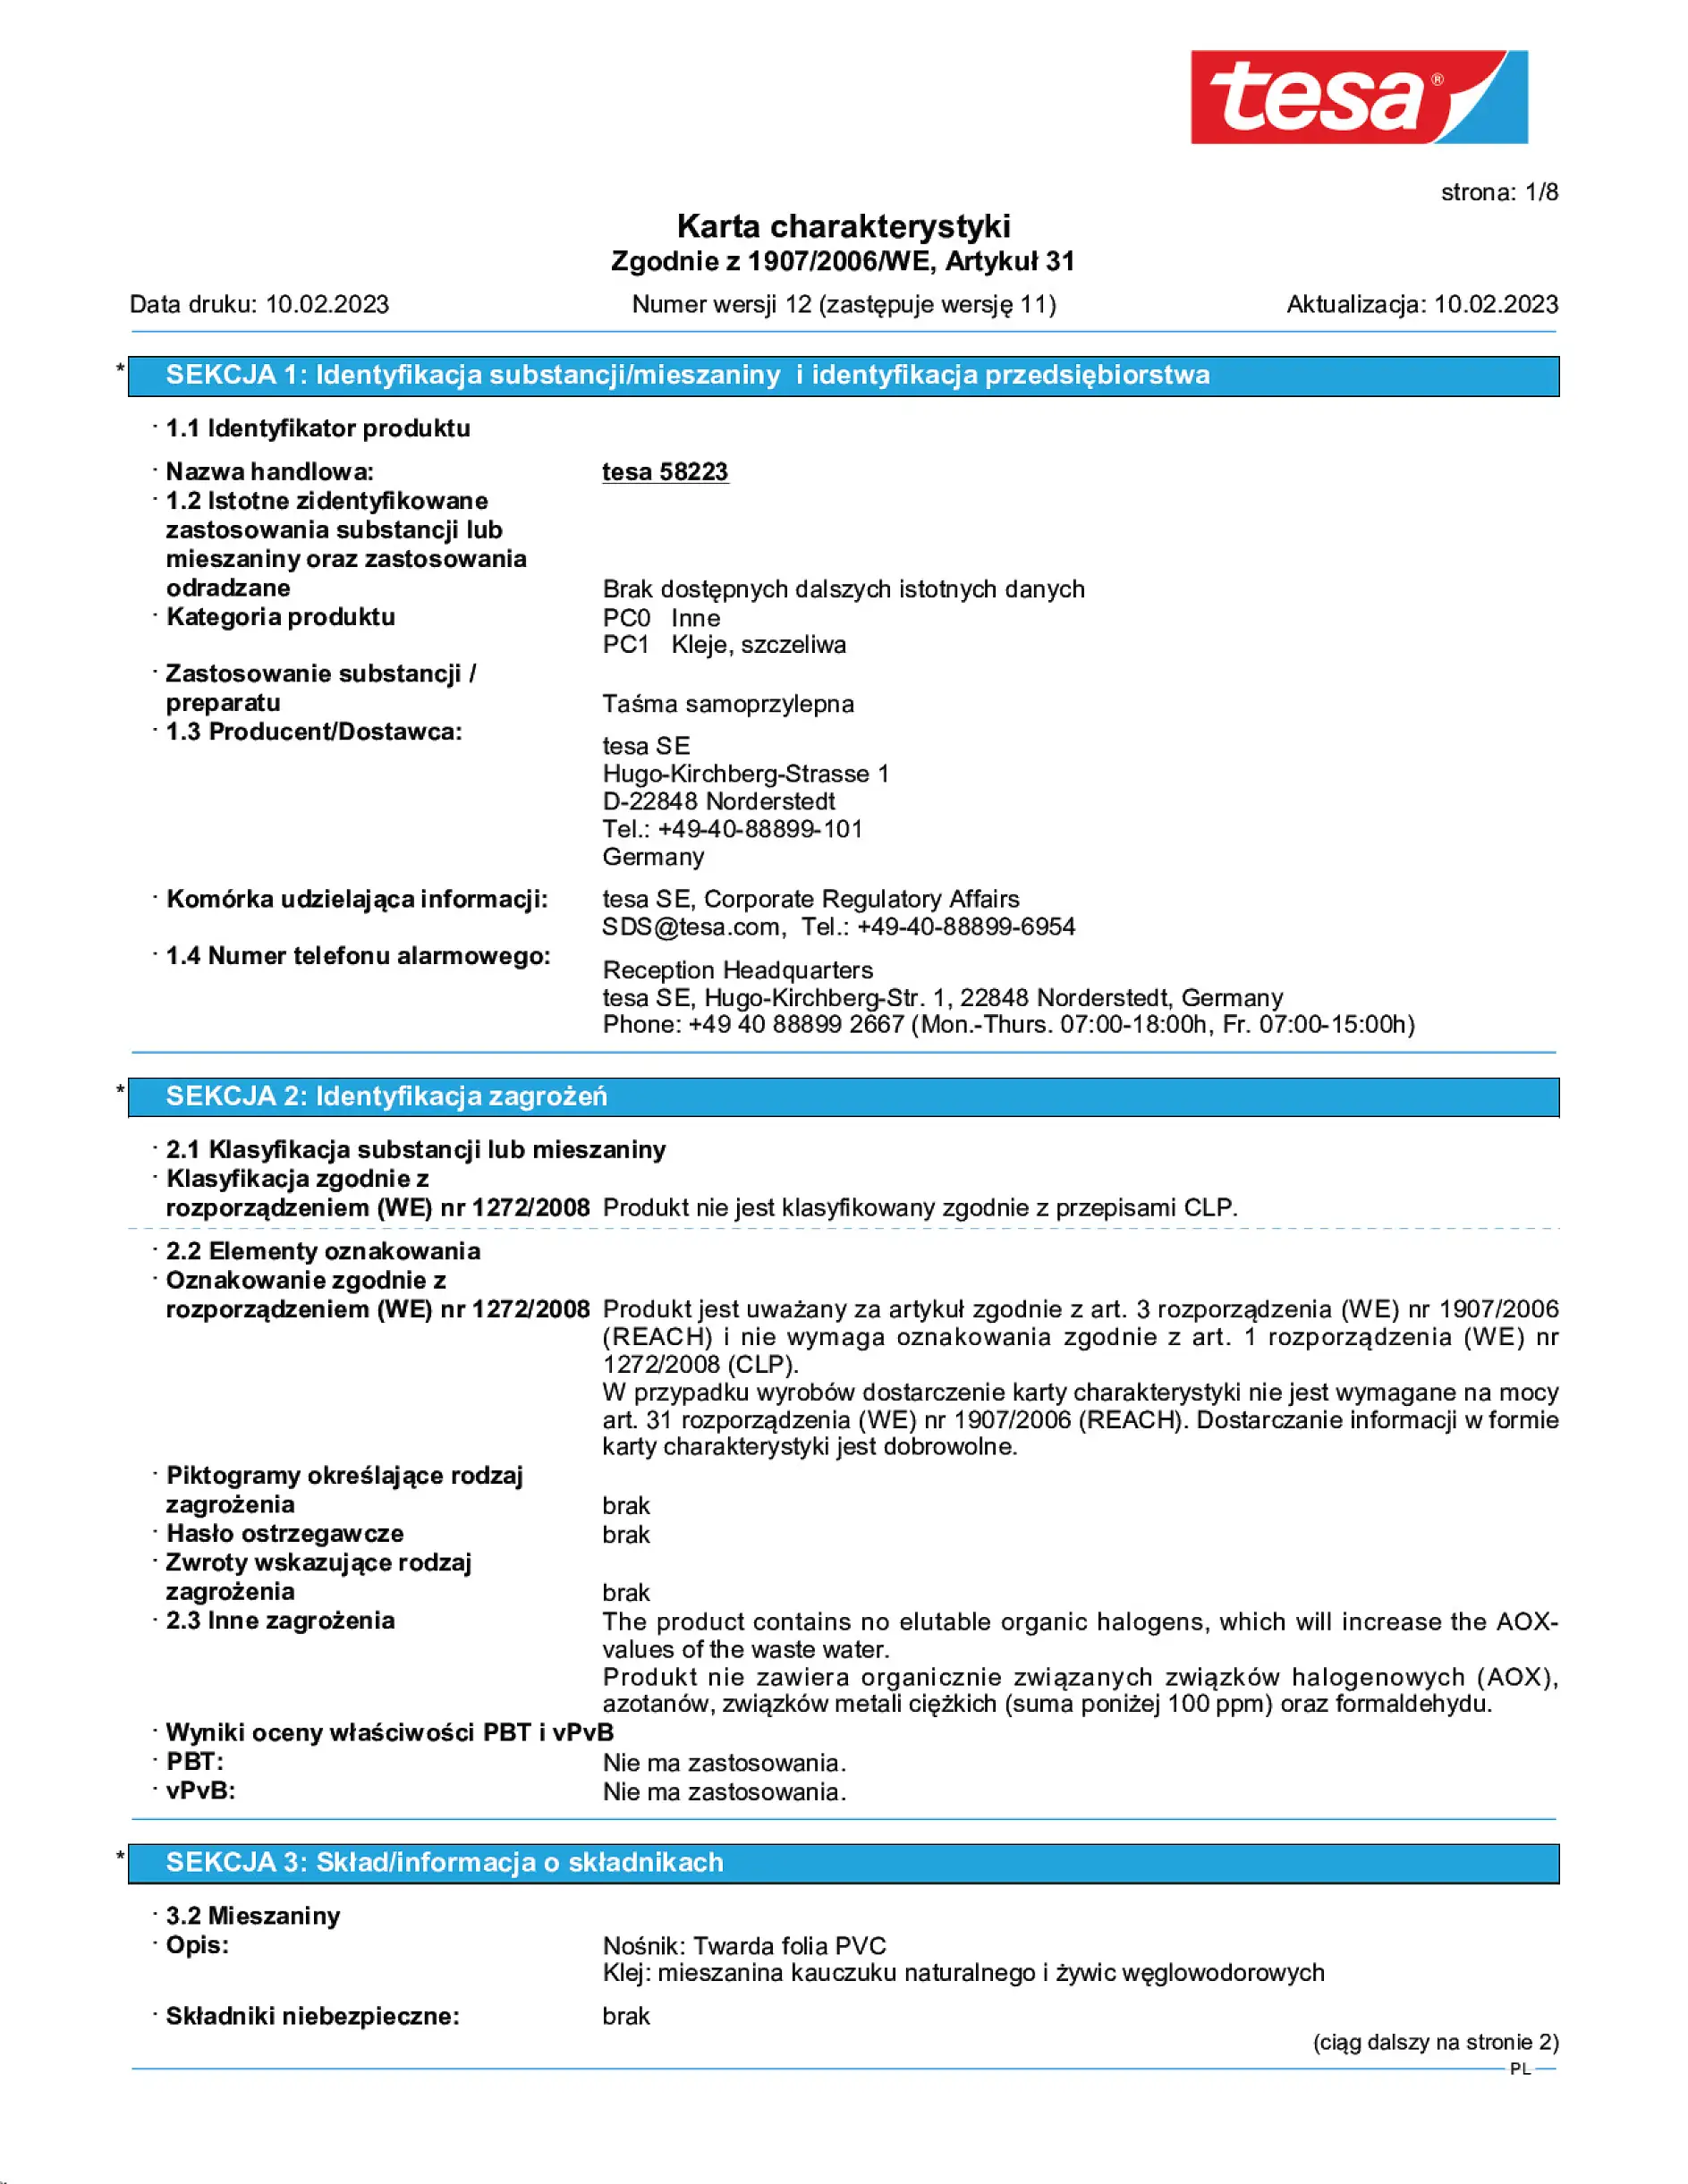 Safety data sheet_tesapack® 57249_pl-PL_v12